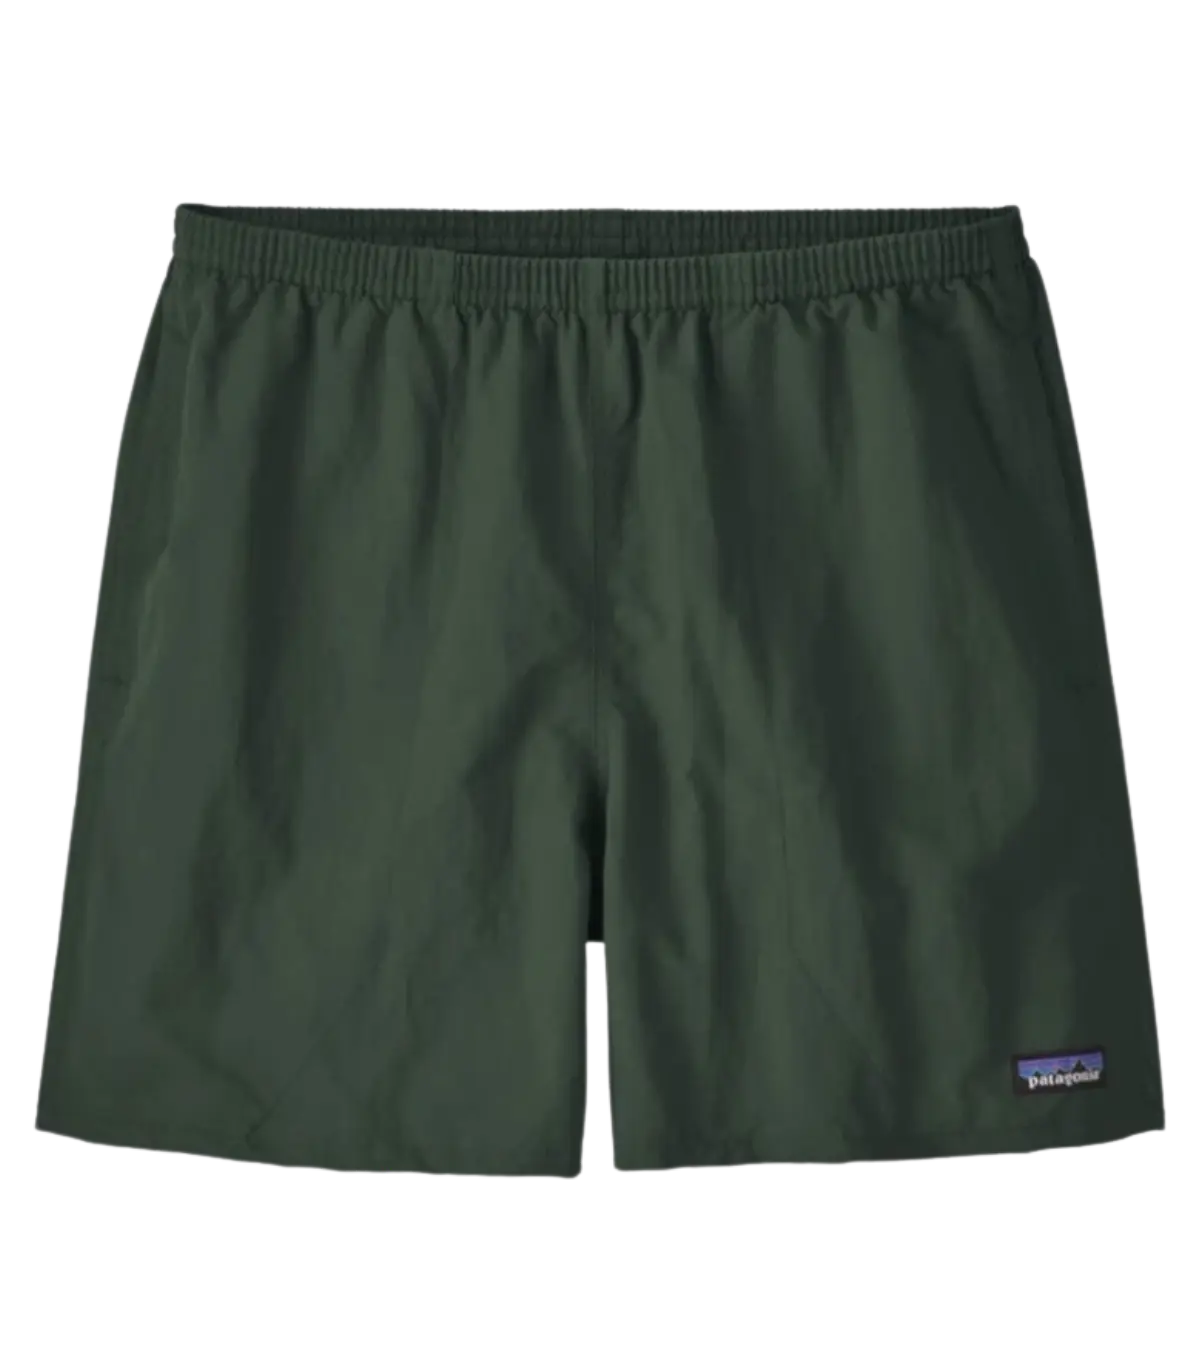 https://shopglobalpursuit.com/cdn/shop/files/patagonia-mens-baggies-shorts-green_3_2048x.webp?v=1692841618